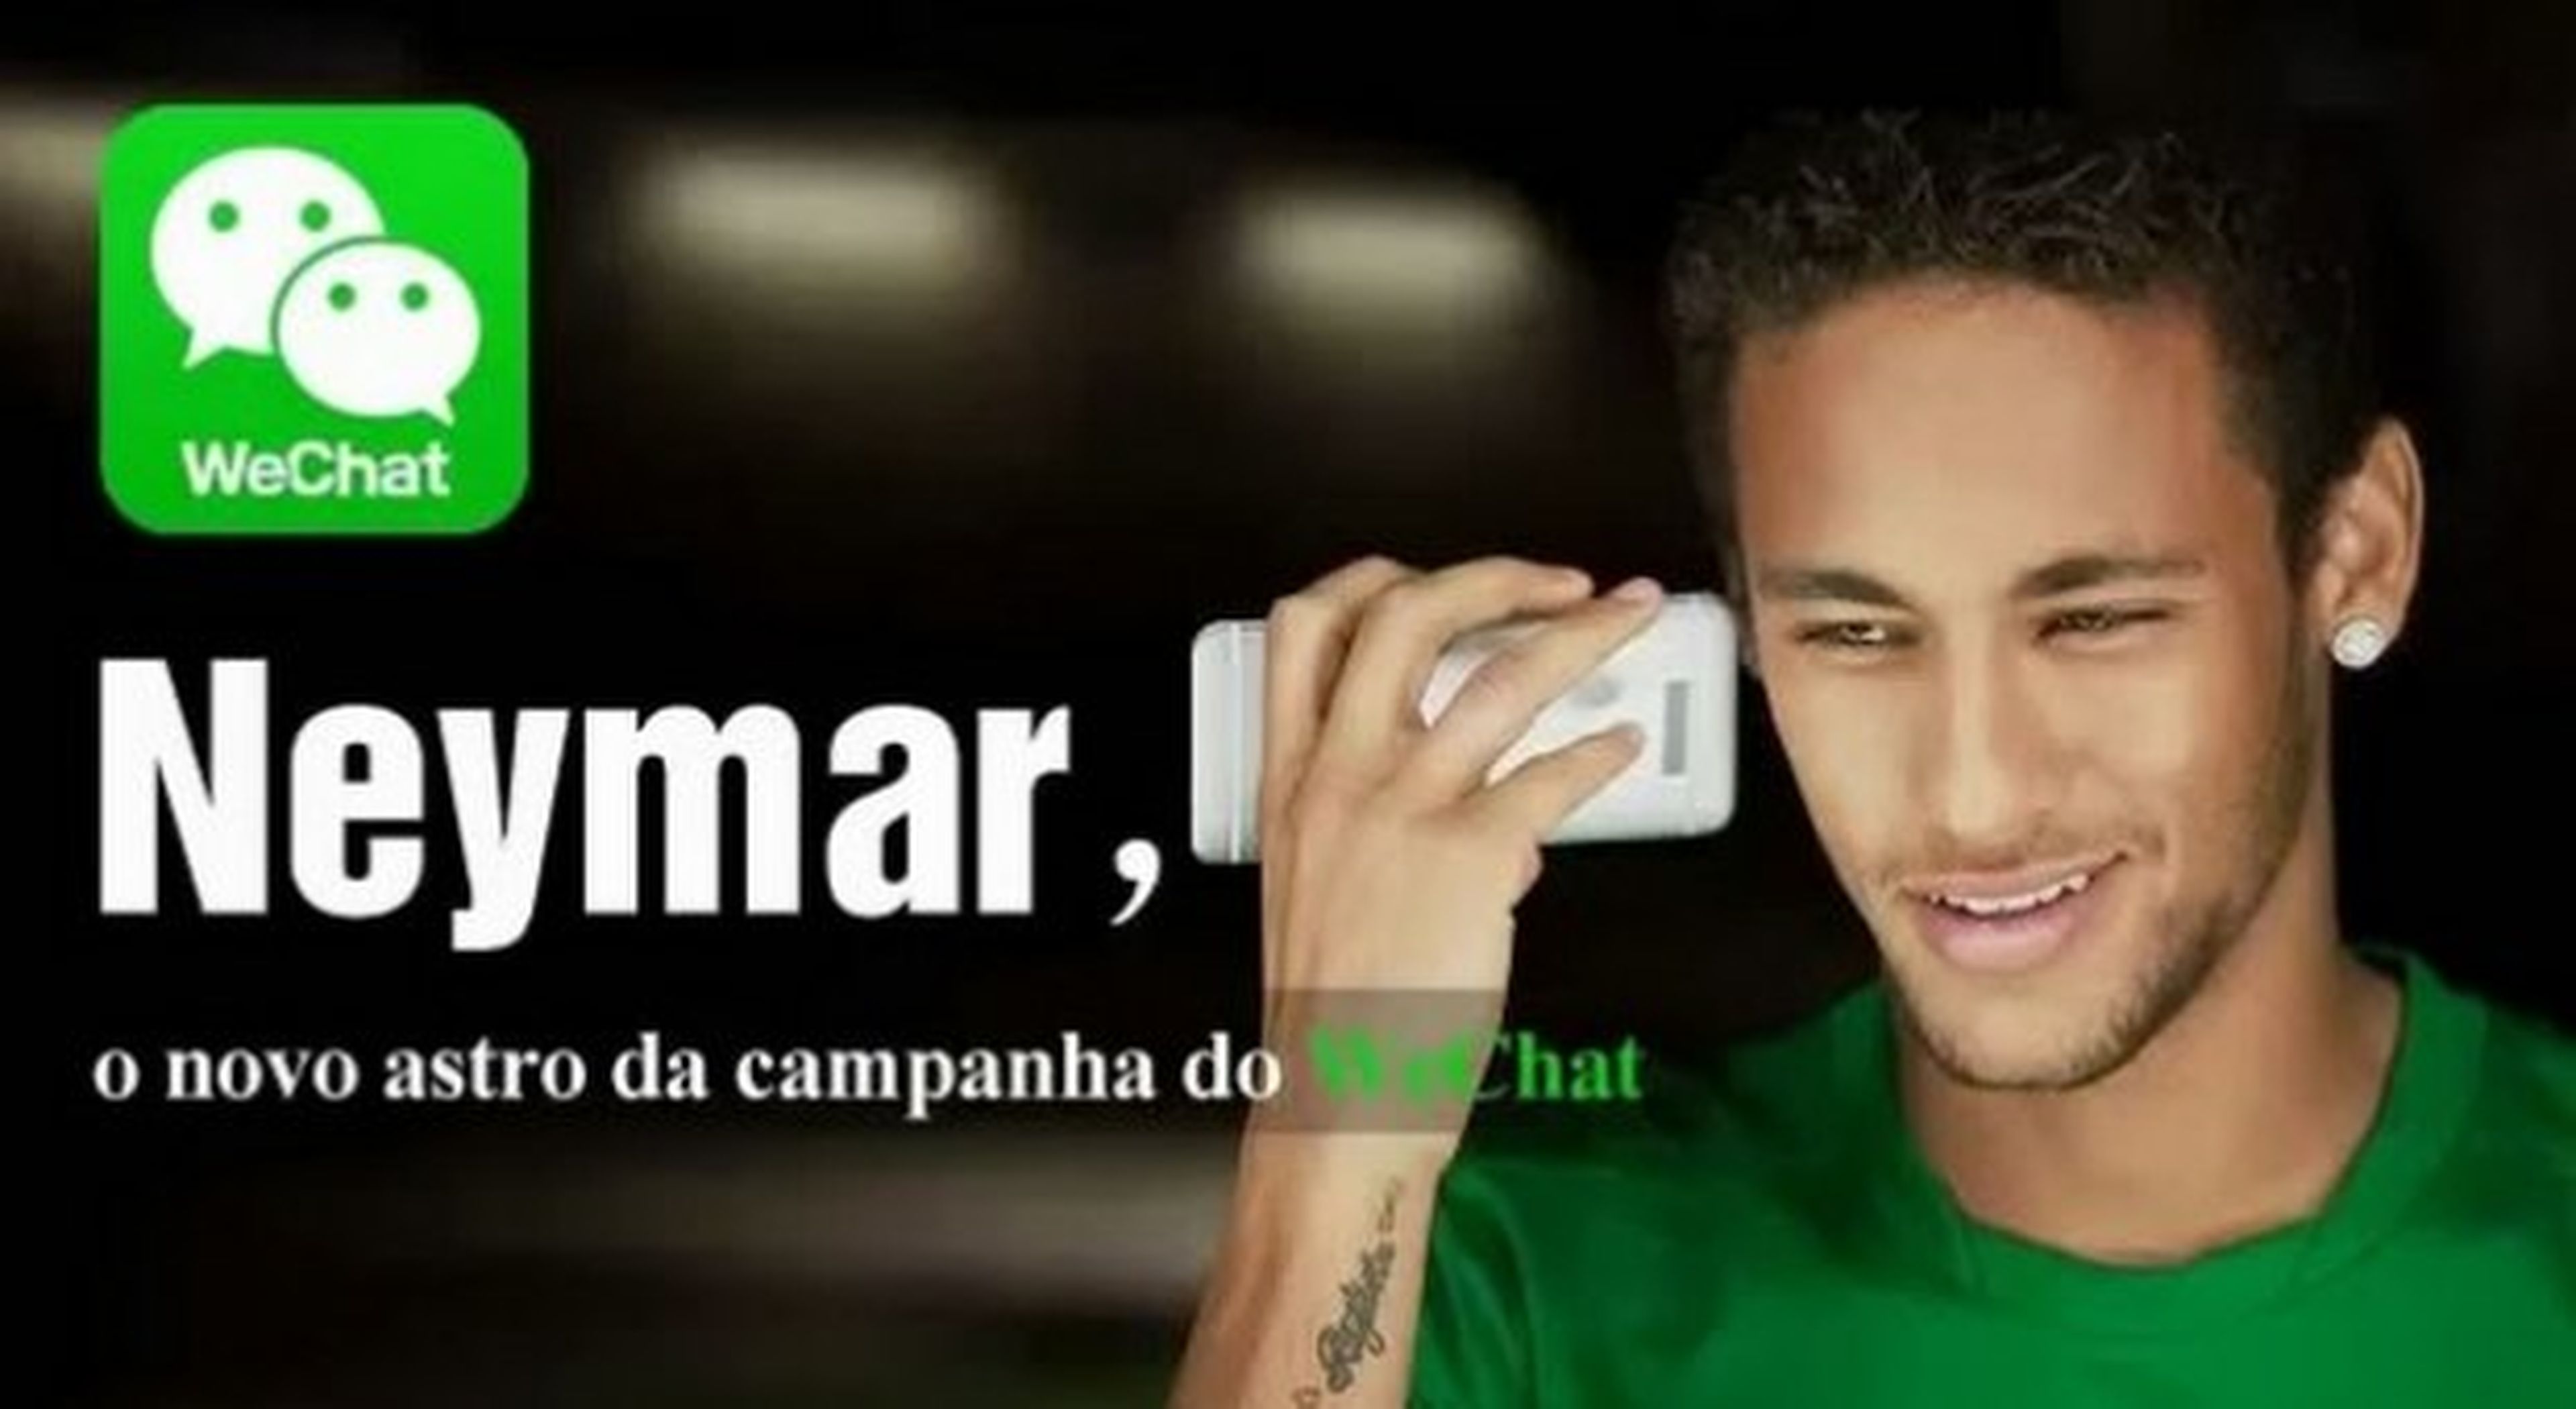 Neymar WeChat